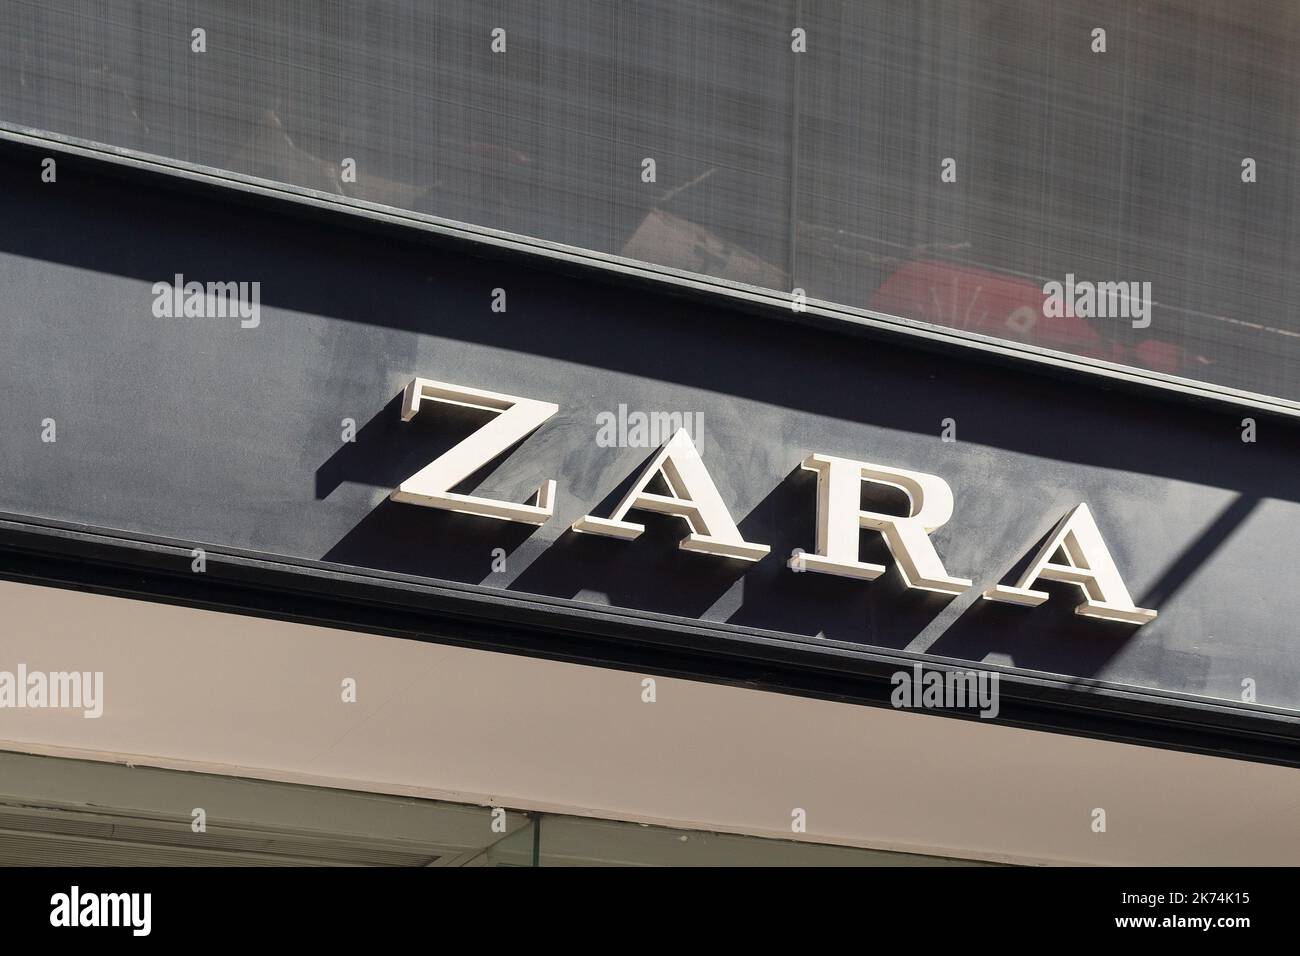 Außenansicht einer Zara-Kette in der Königsallee in Düsseldorf  Stockfotografie - Alamy